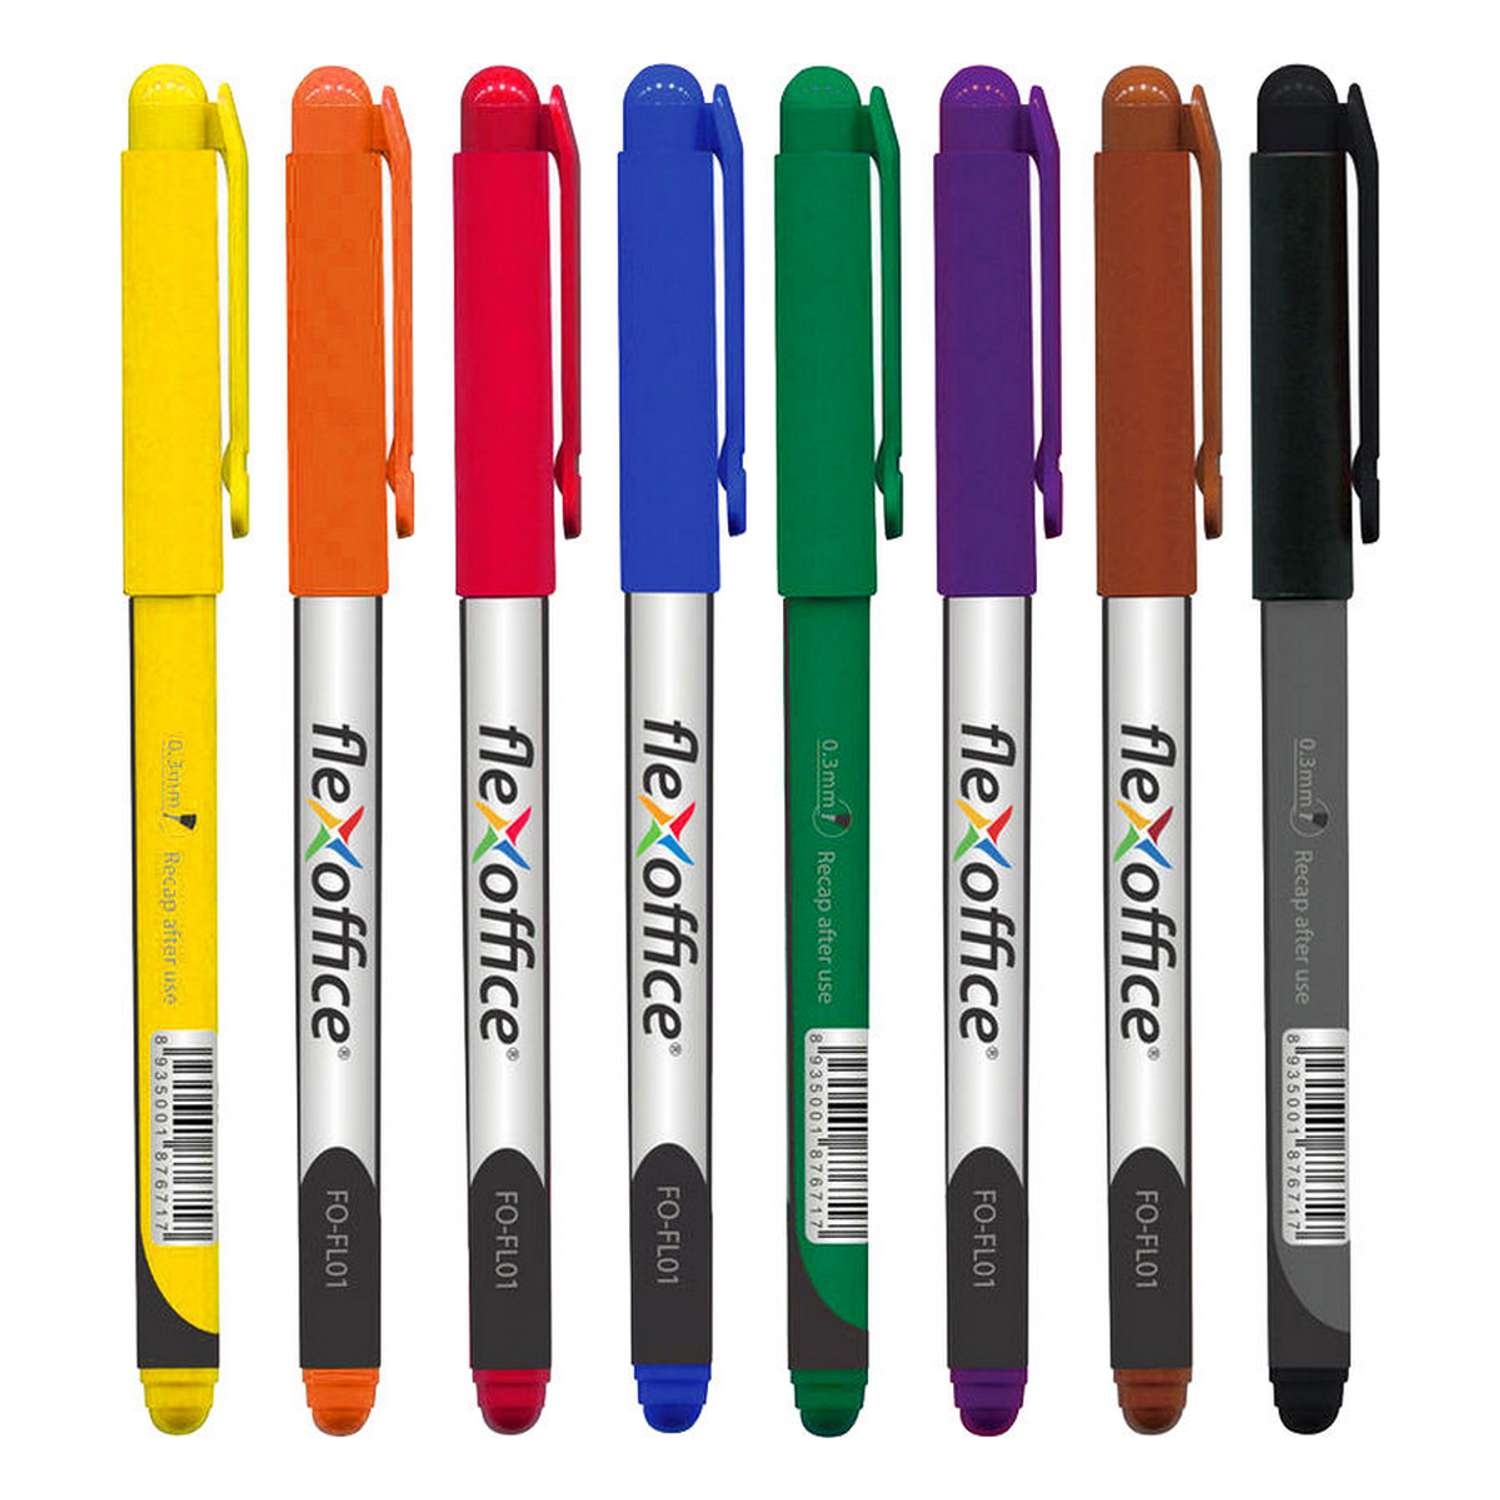 Ручки капилярные Flexoffice набор 8 штук 8 цветов ассорти 0.4мм - фото 2